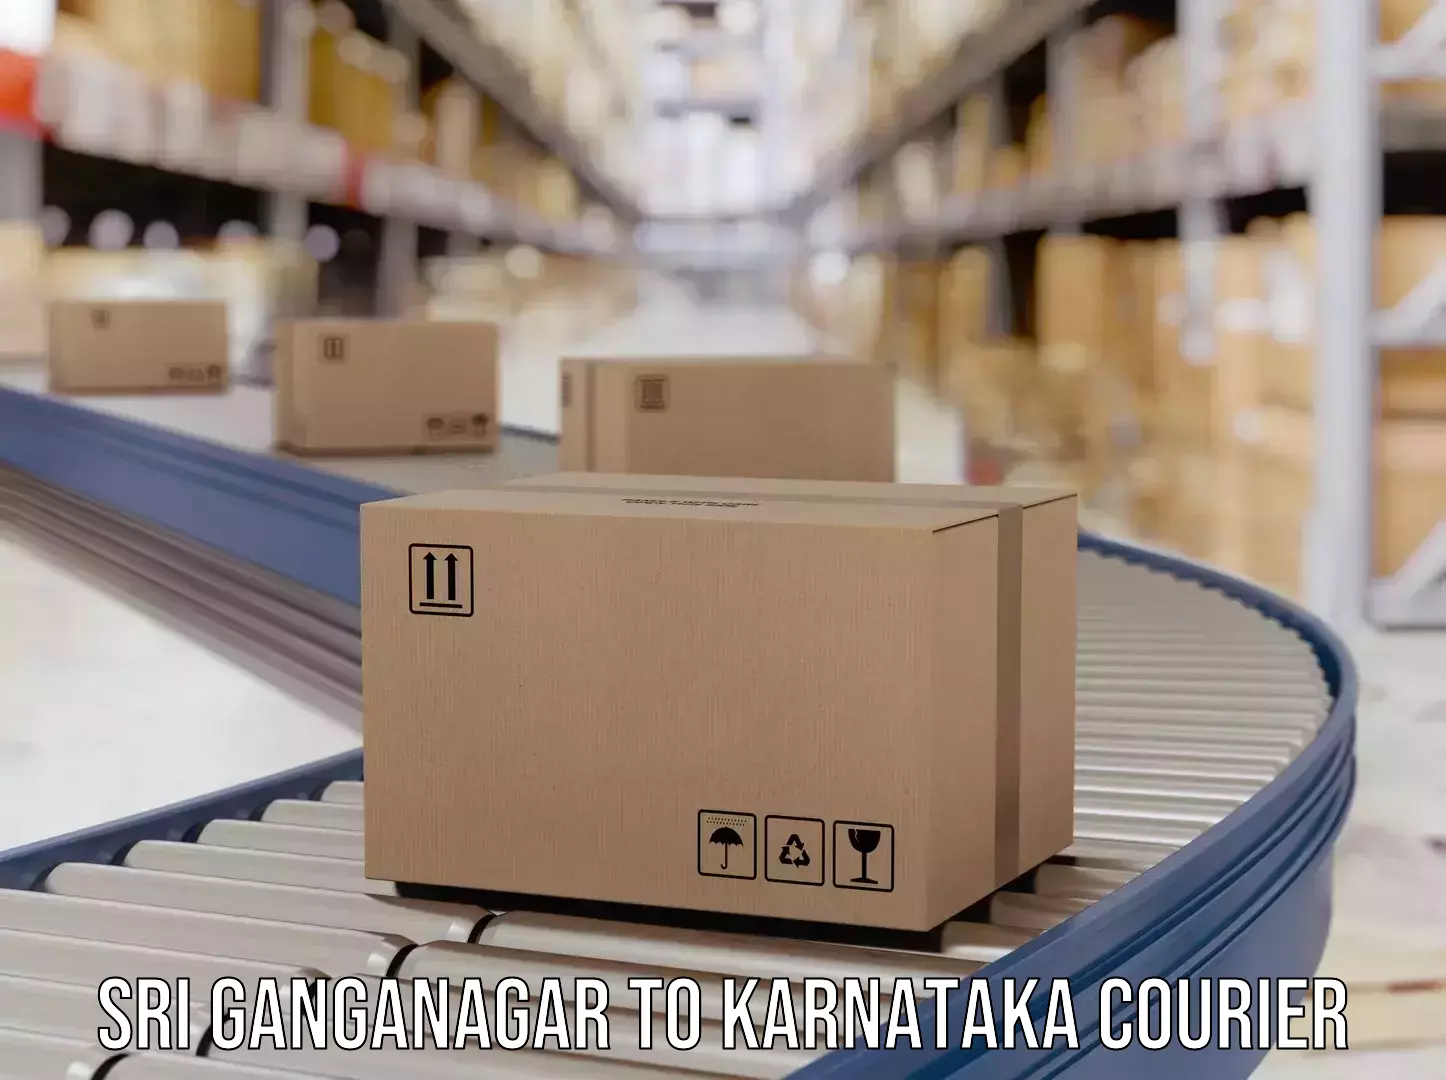 High-capacity parcel service Sri Ganganagar to Karnataka